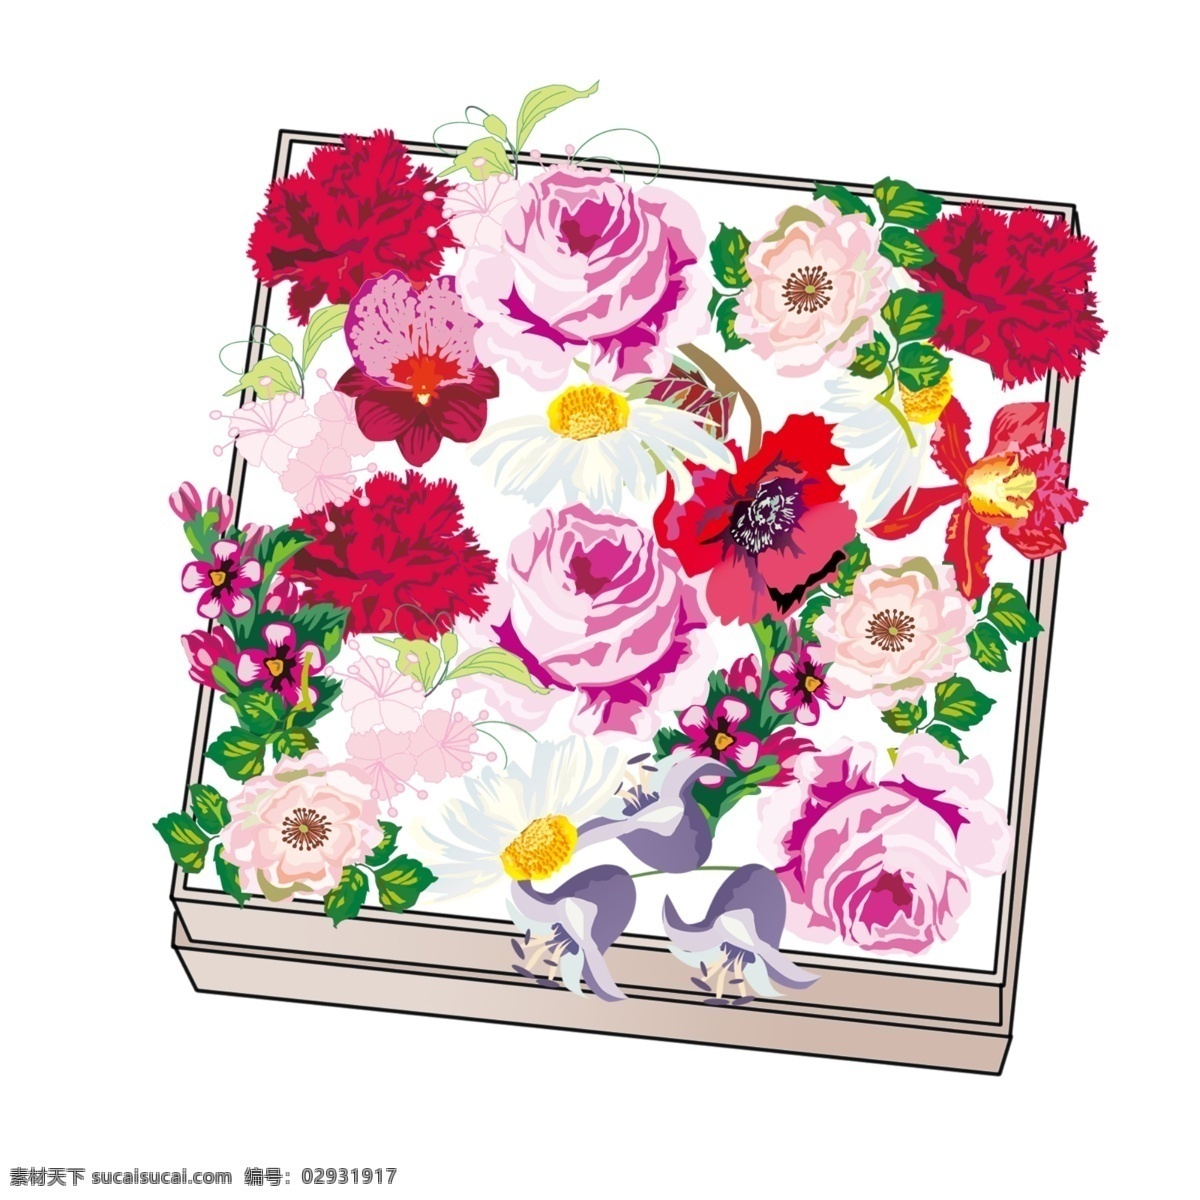 520 粉色 鲜花 礼盒 网红鲜花礼盒 表白 花店素材 康乃馨 奥斯汀 花园 玫瑰 方形花盒